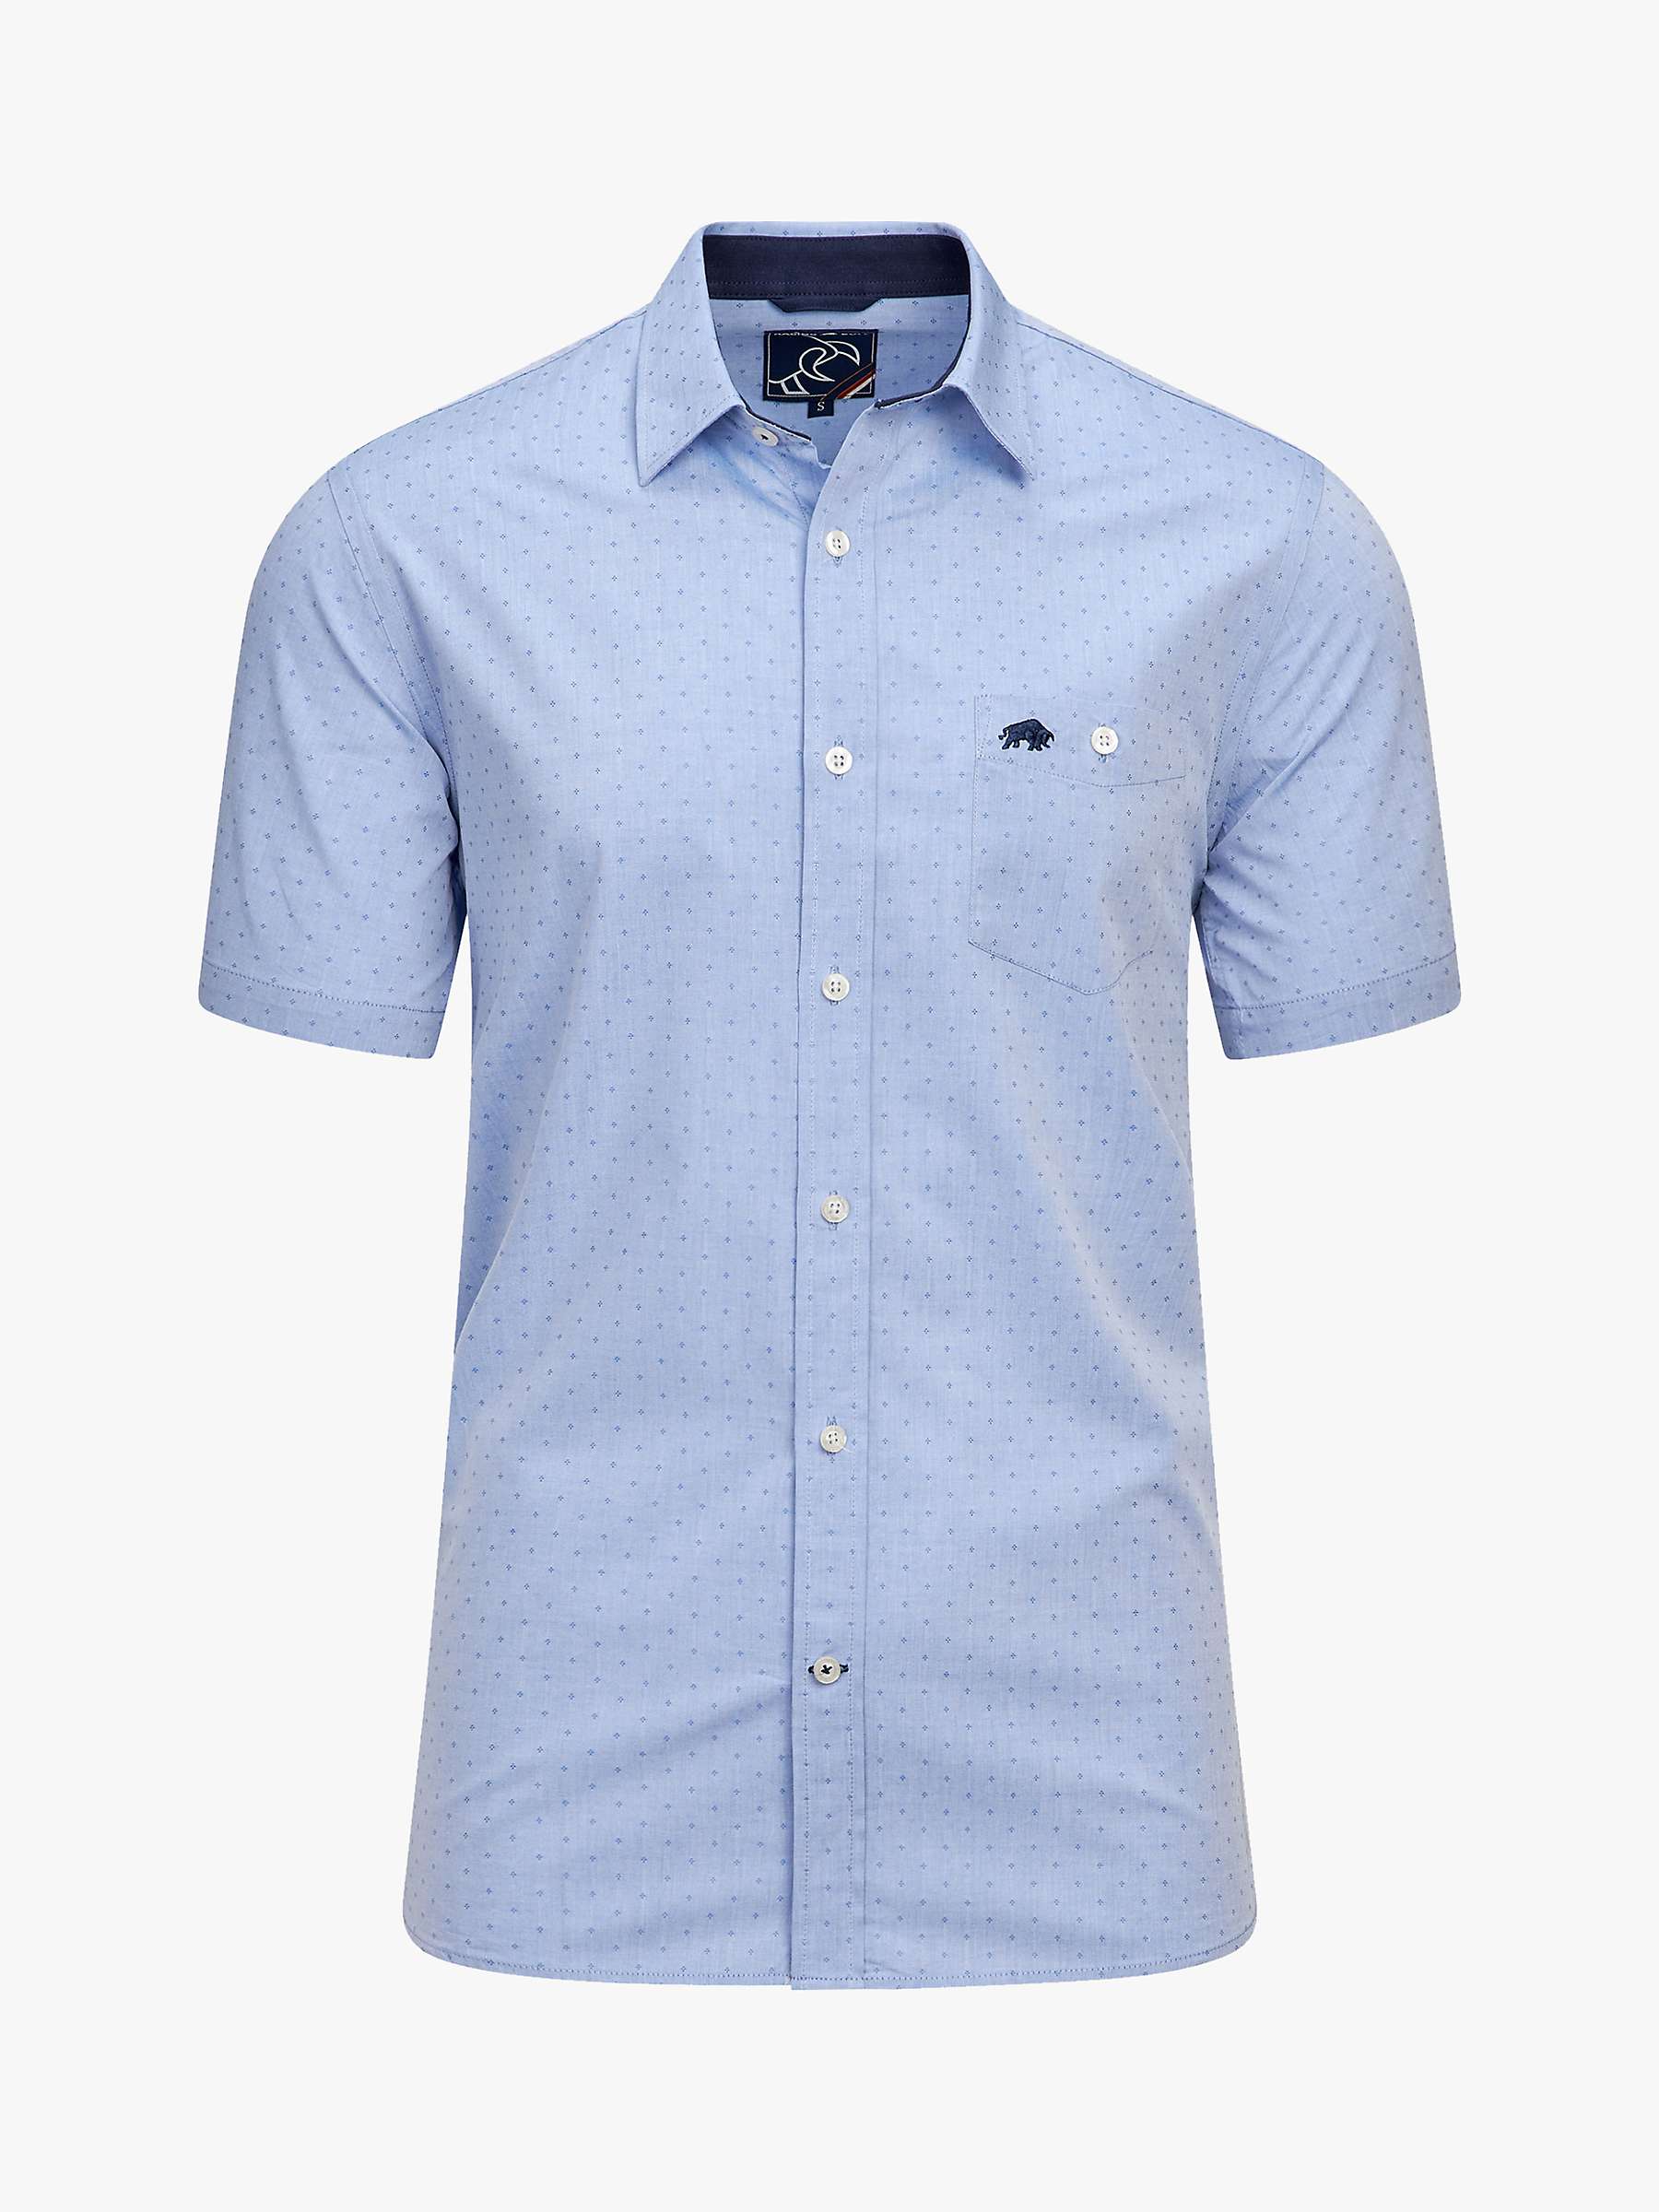 Buy Raging Bull Short Sleeve Dobby Shirt, Blue Online at johnlewis.com